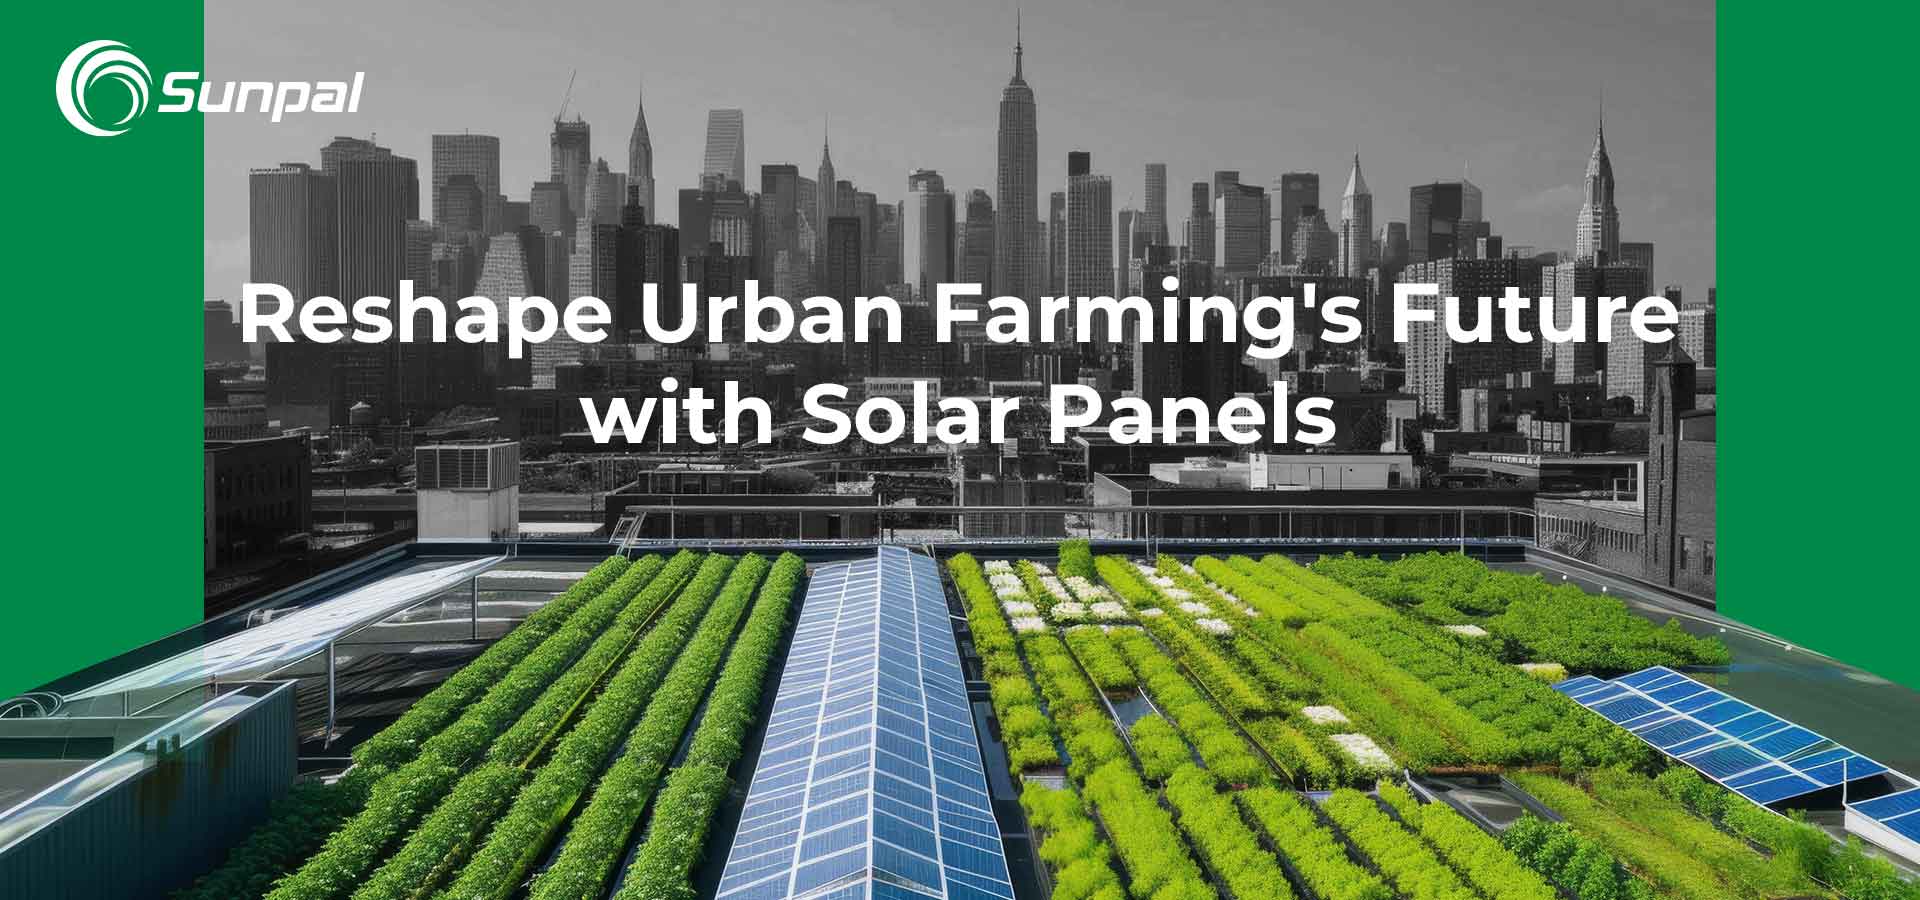 Solardächer: Die Zukunft der städtischen Landwirtschaft neu gestalten